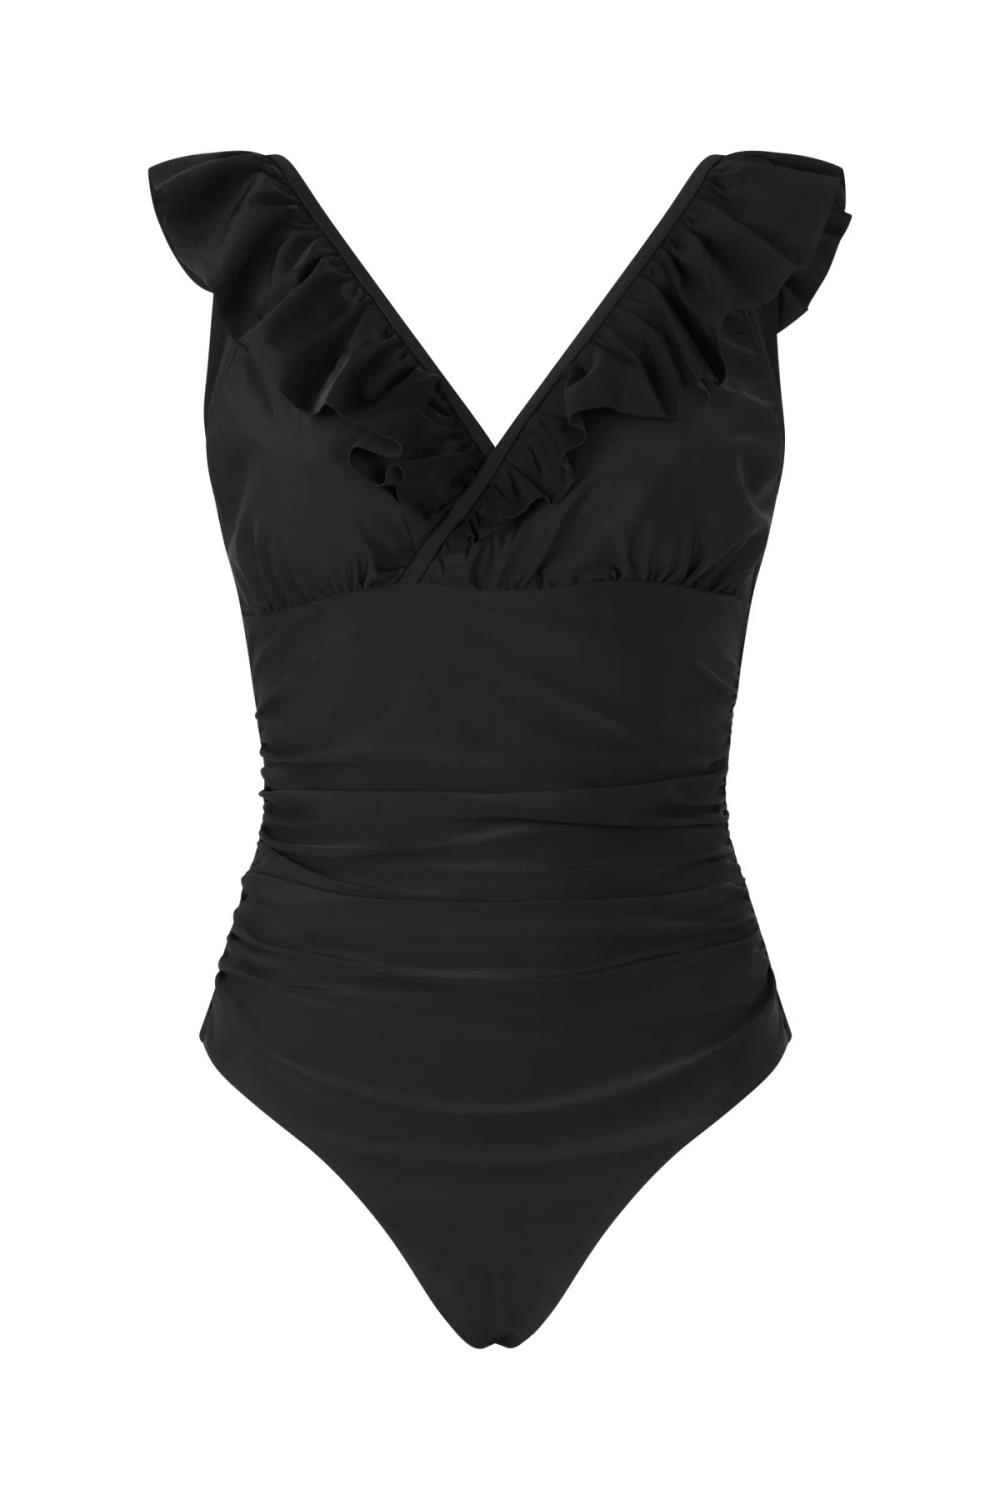 Agnescras swimsuit black